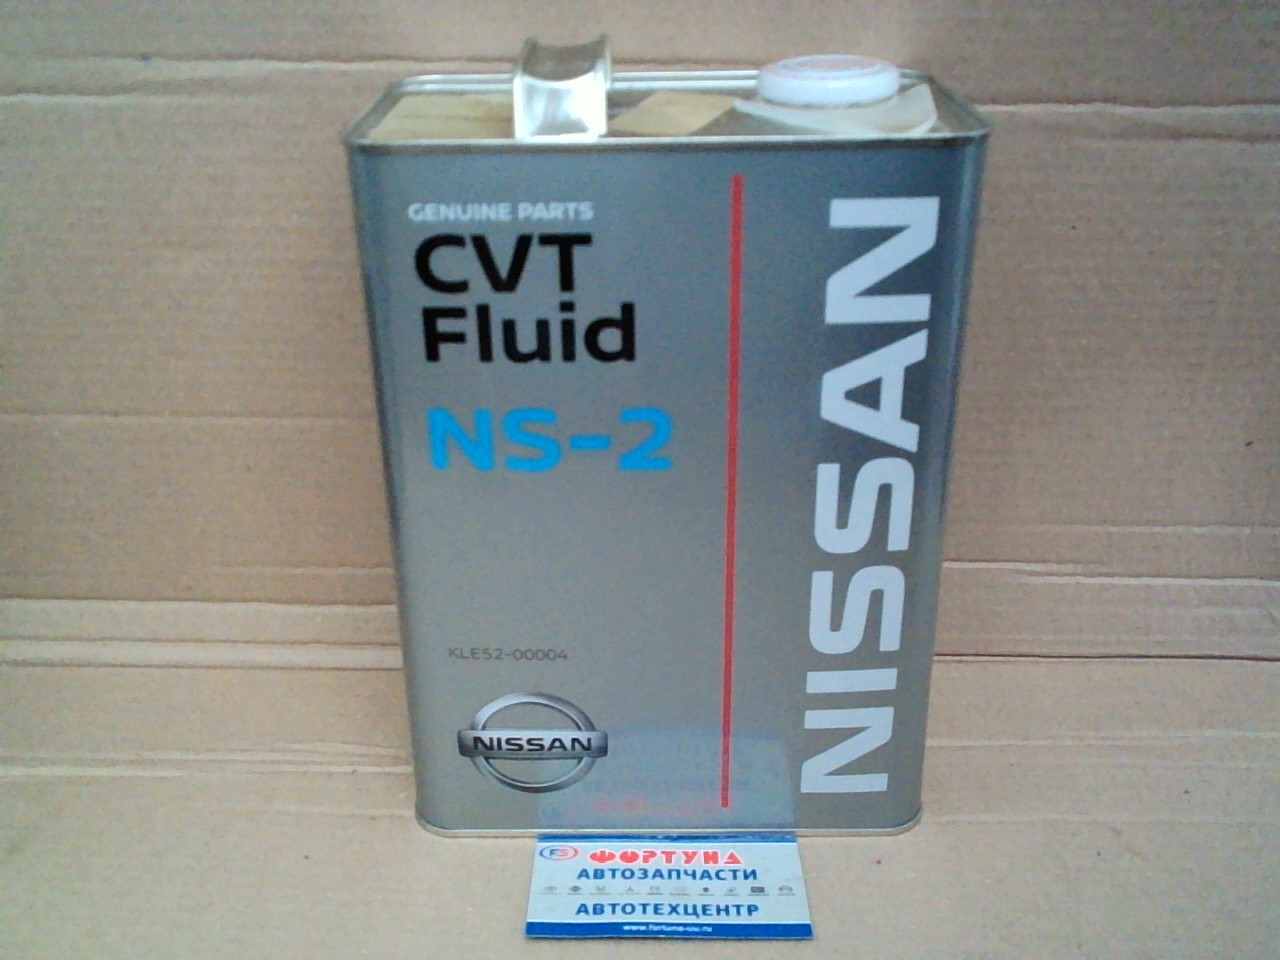 Масло трансмиссионное NISSAN/ CVT/NS-2 KLE52-00004  (4.0л.) (услуга по замене масла) на  